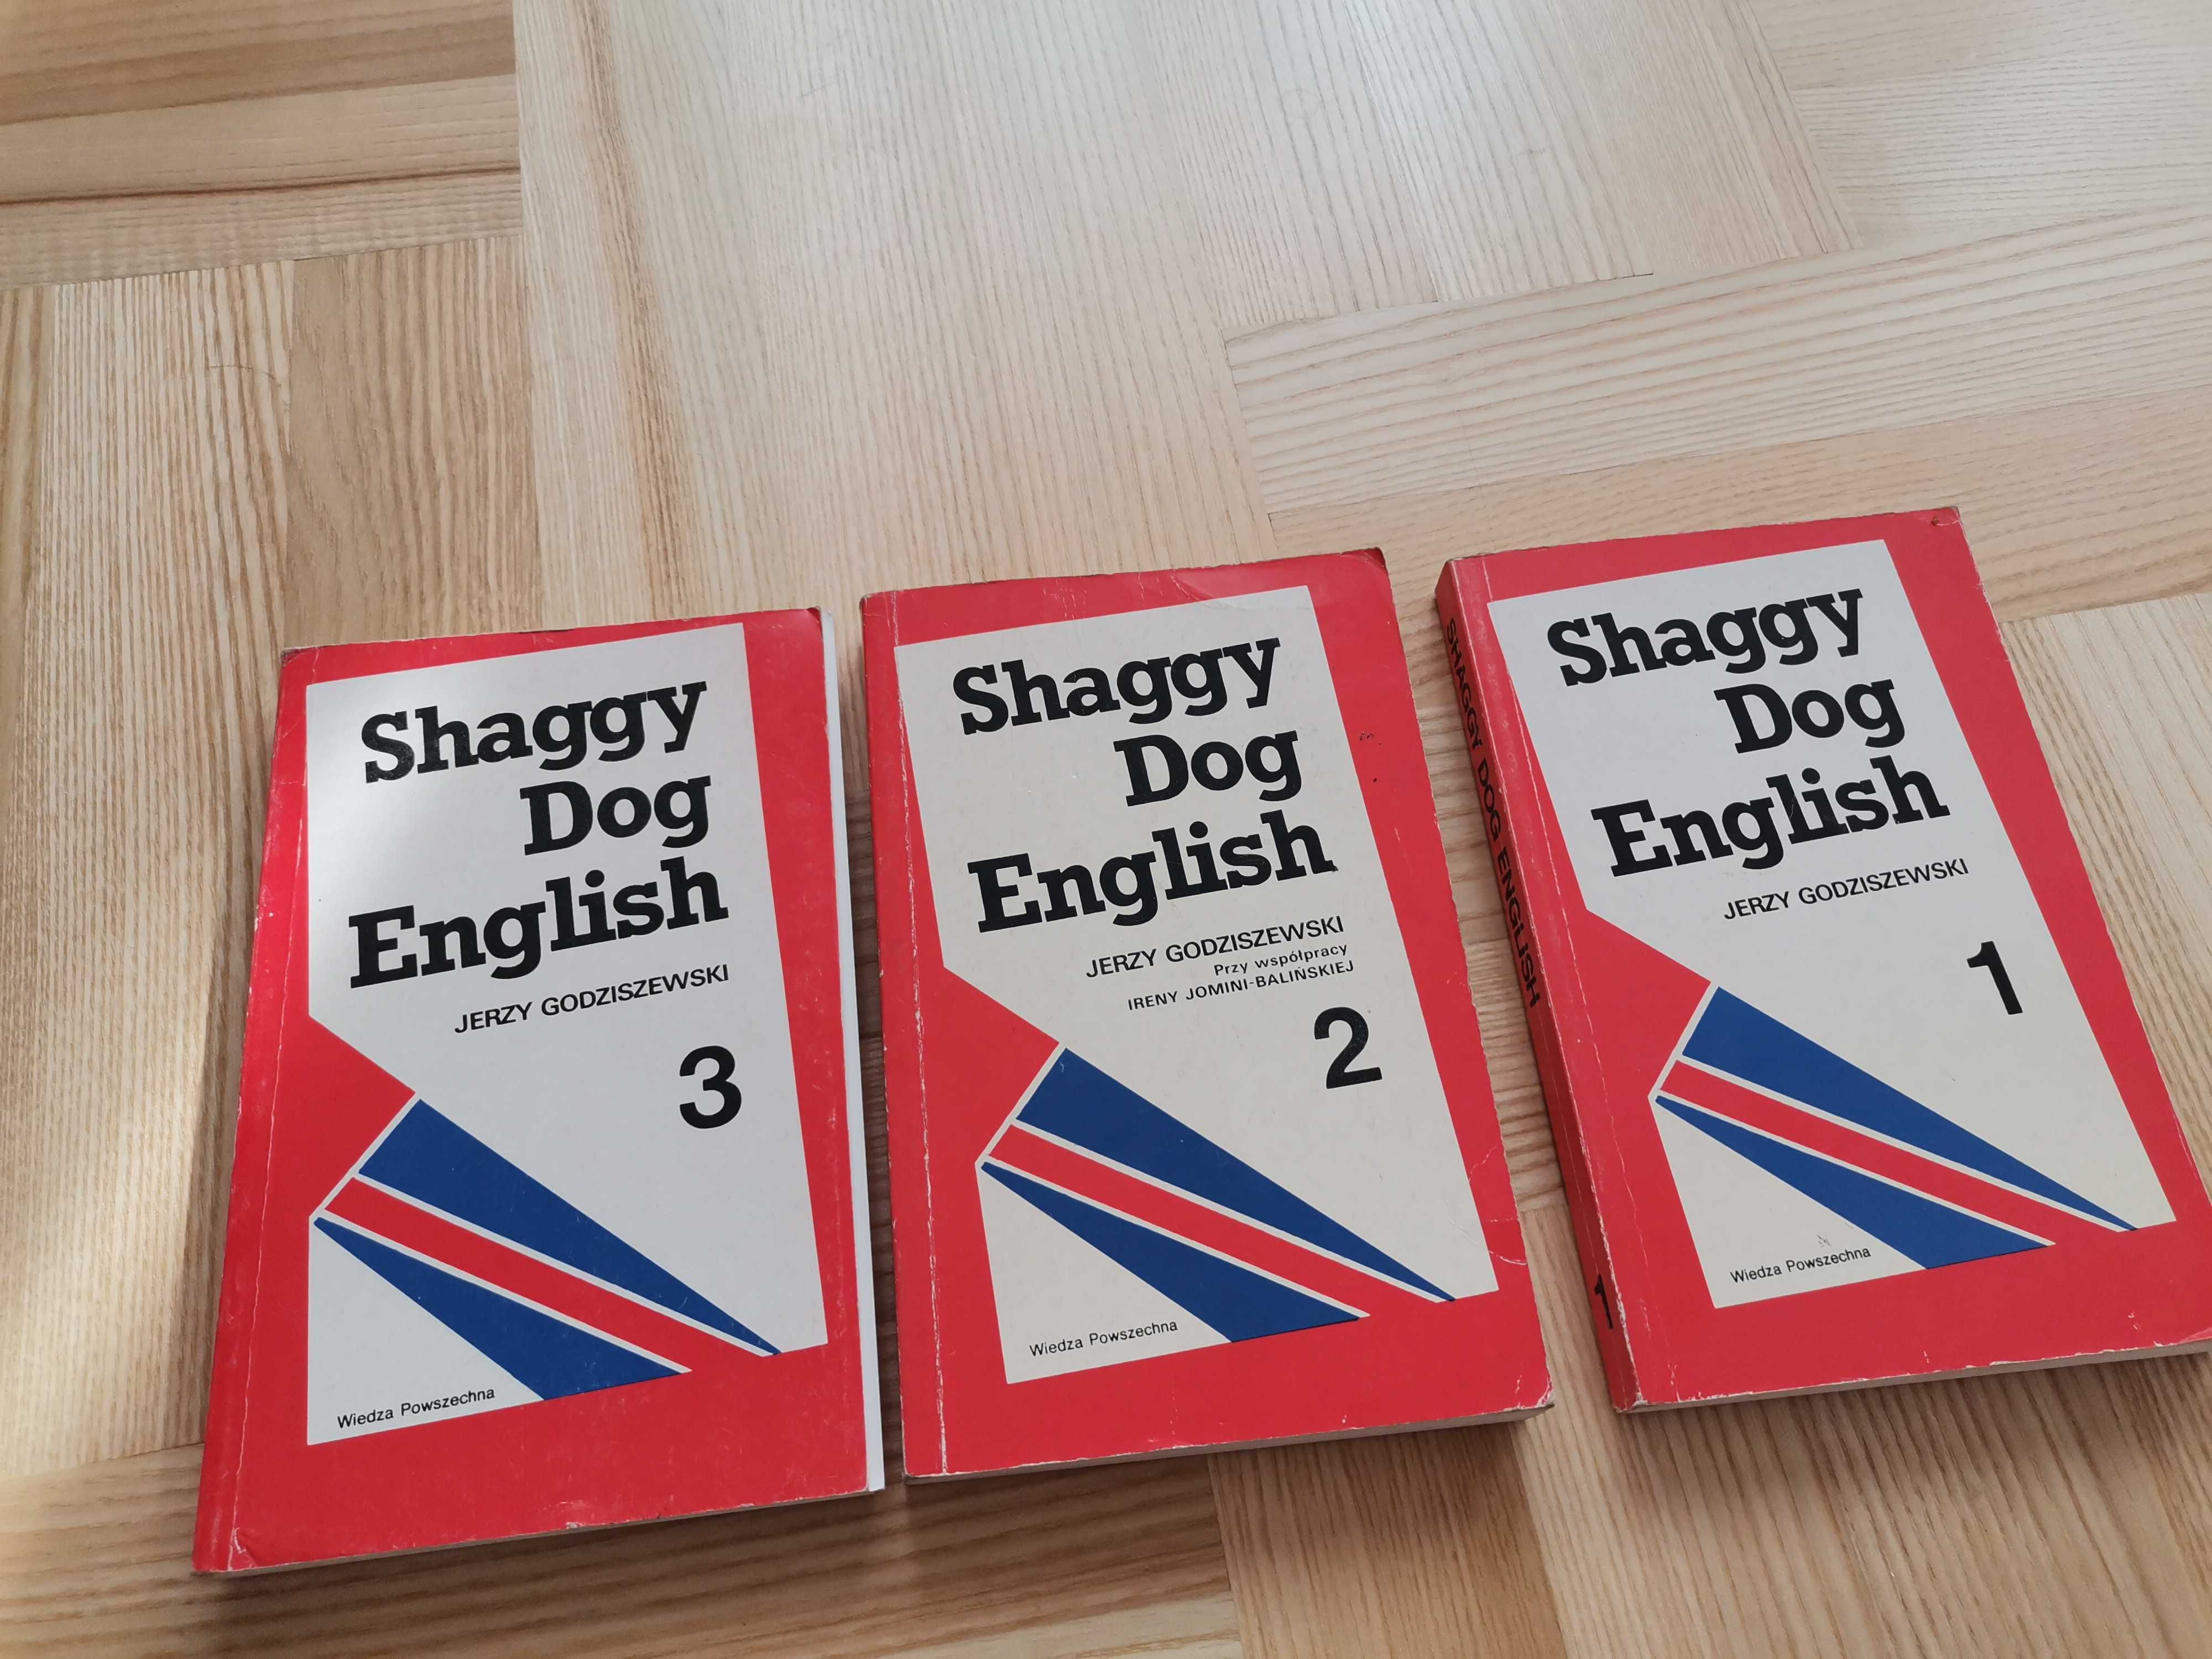 Shaggi Dog English 1, 2,3. Jerzy Godziszewski